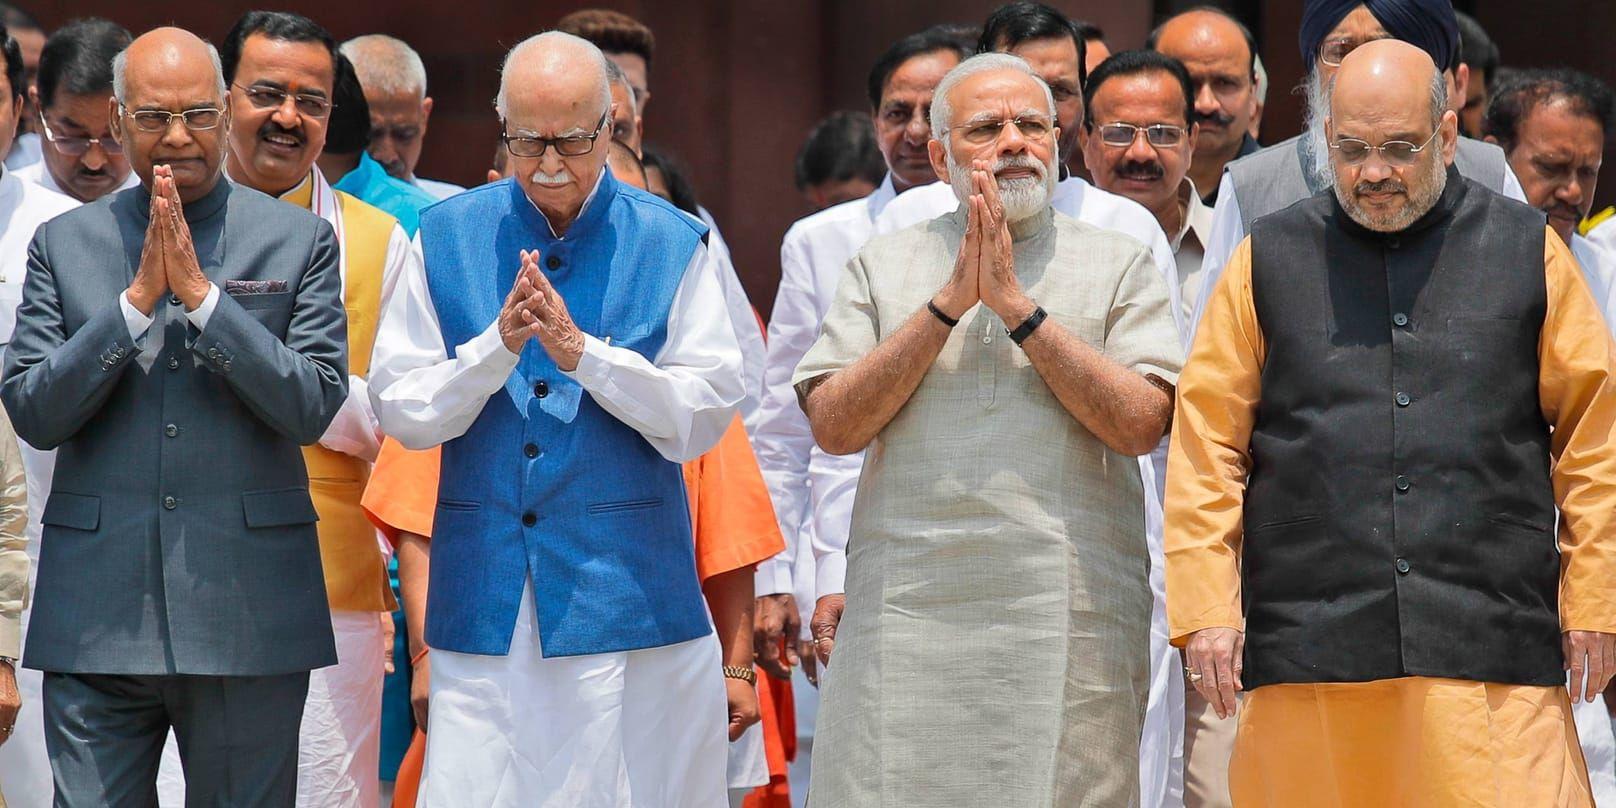 Ram Nath Kovind, längst till vänster, under ceremonin då han nominerades till ny president.